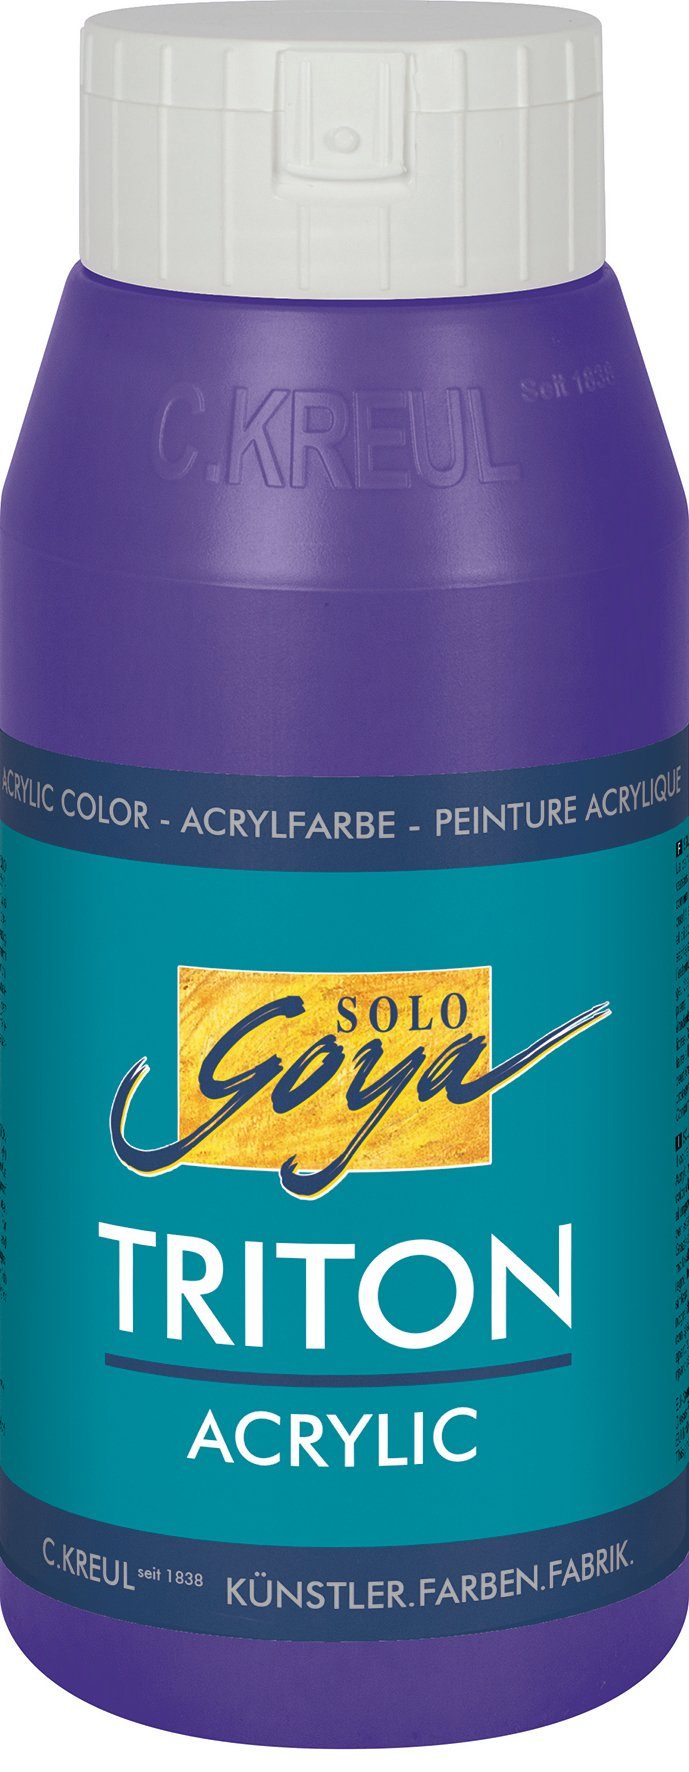 Kreul Acrylfarbe Solo Goya Triton Acrylic, 750 ml Violett